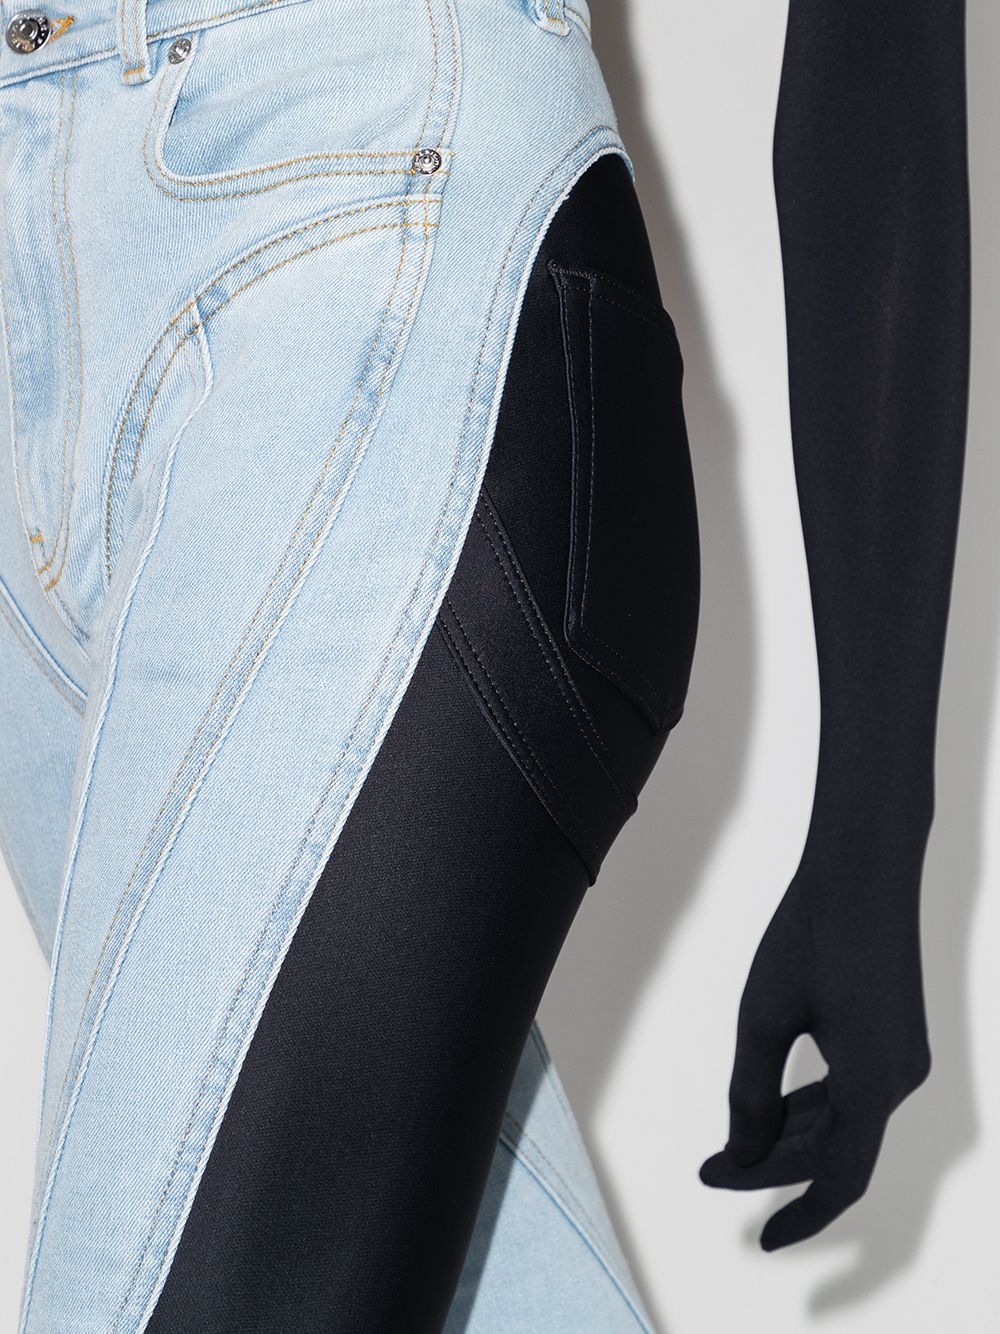 фото Mugler джинсы скинни с контрастными вставками